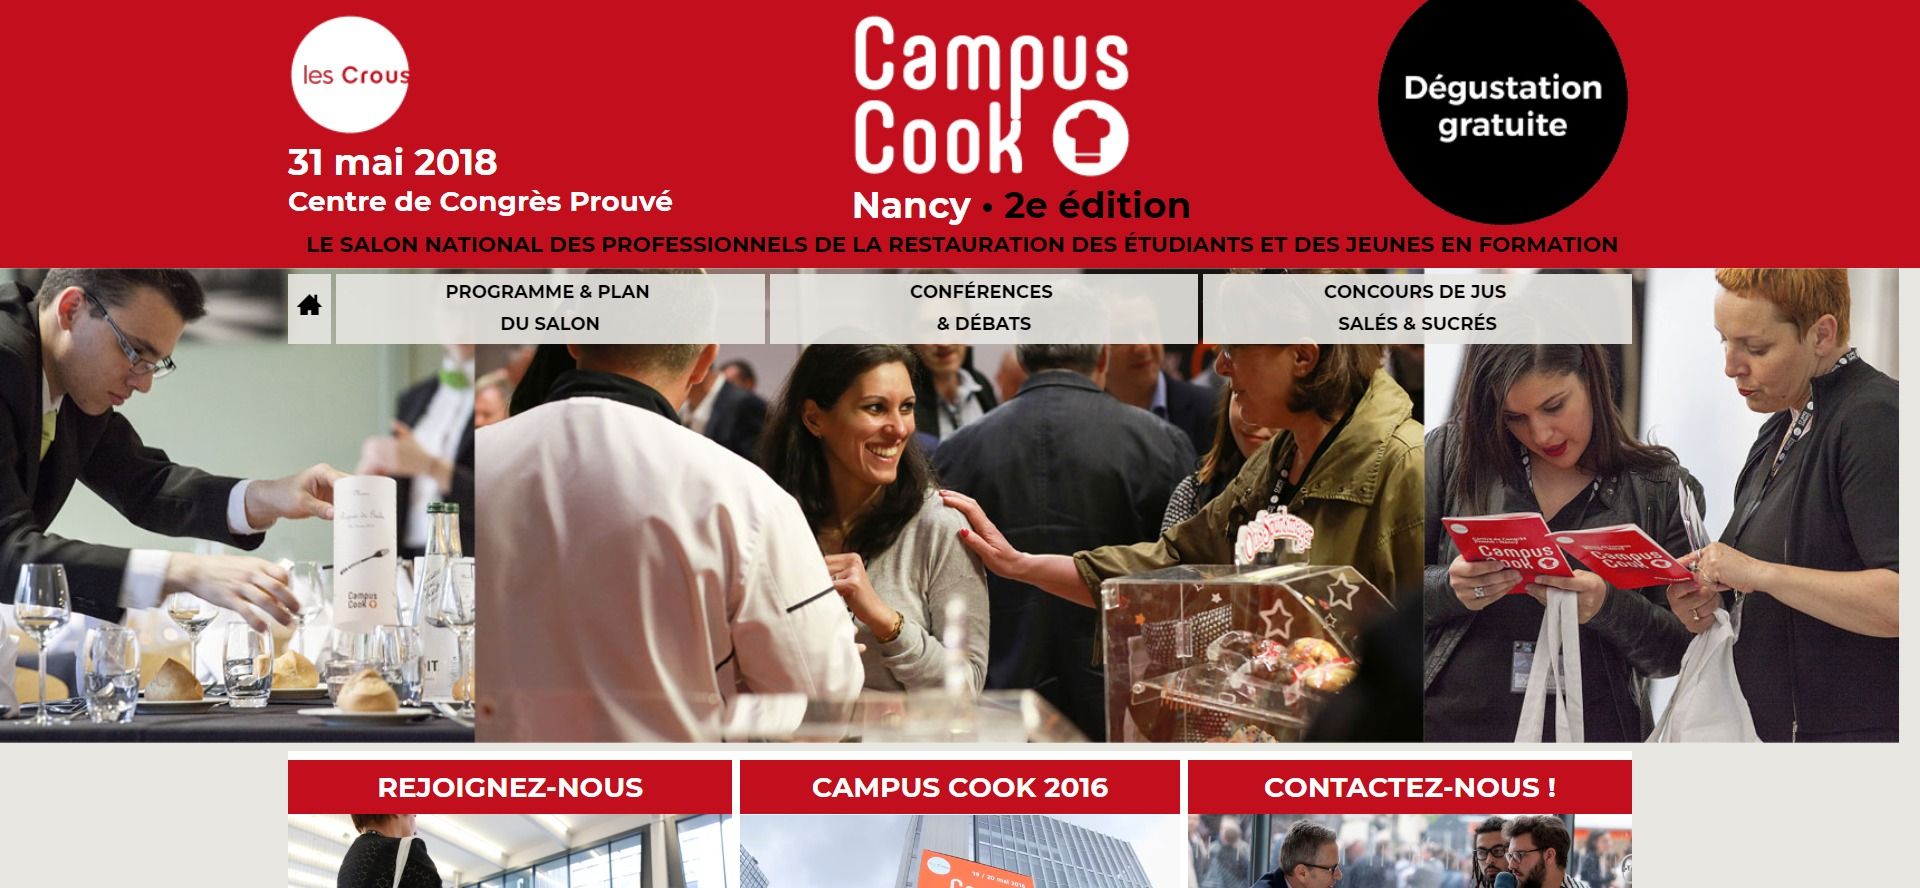 Capture d'écran du site campuscook.fr